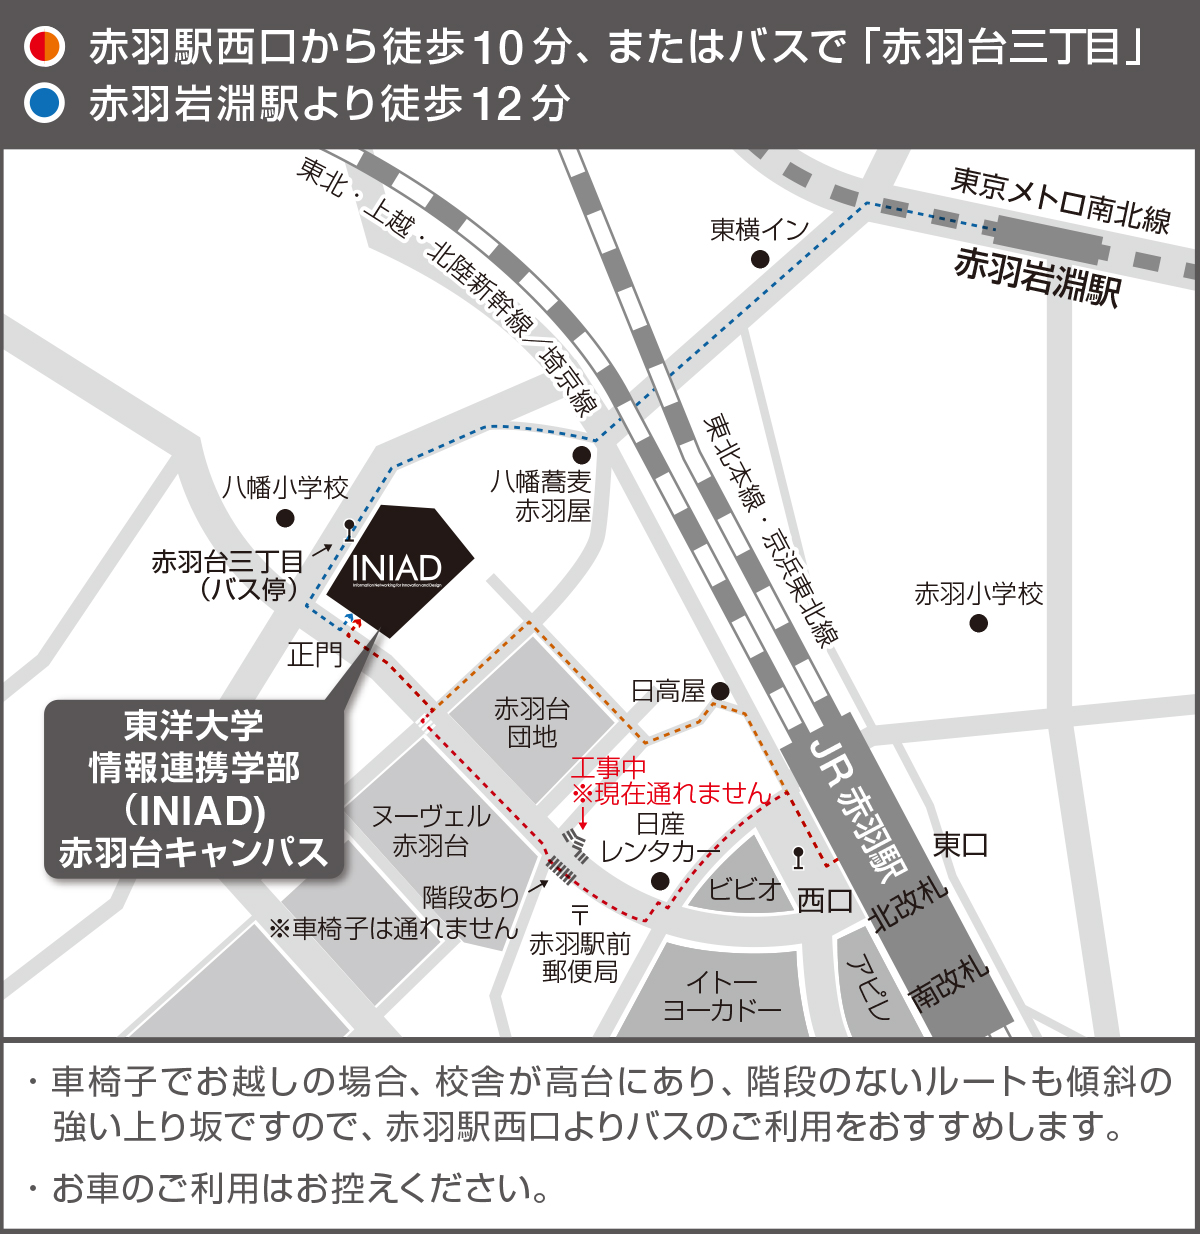 東洋大学赤羽台キャンパスへの行き方が描かれた地図